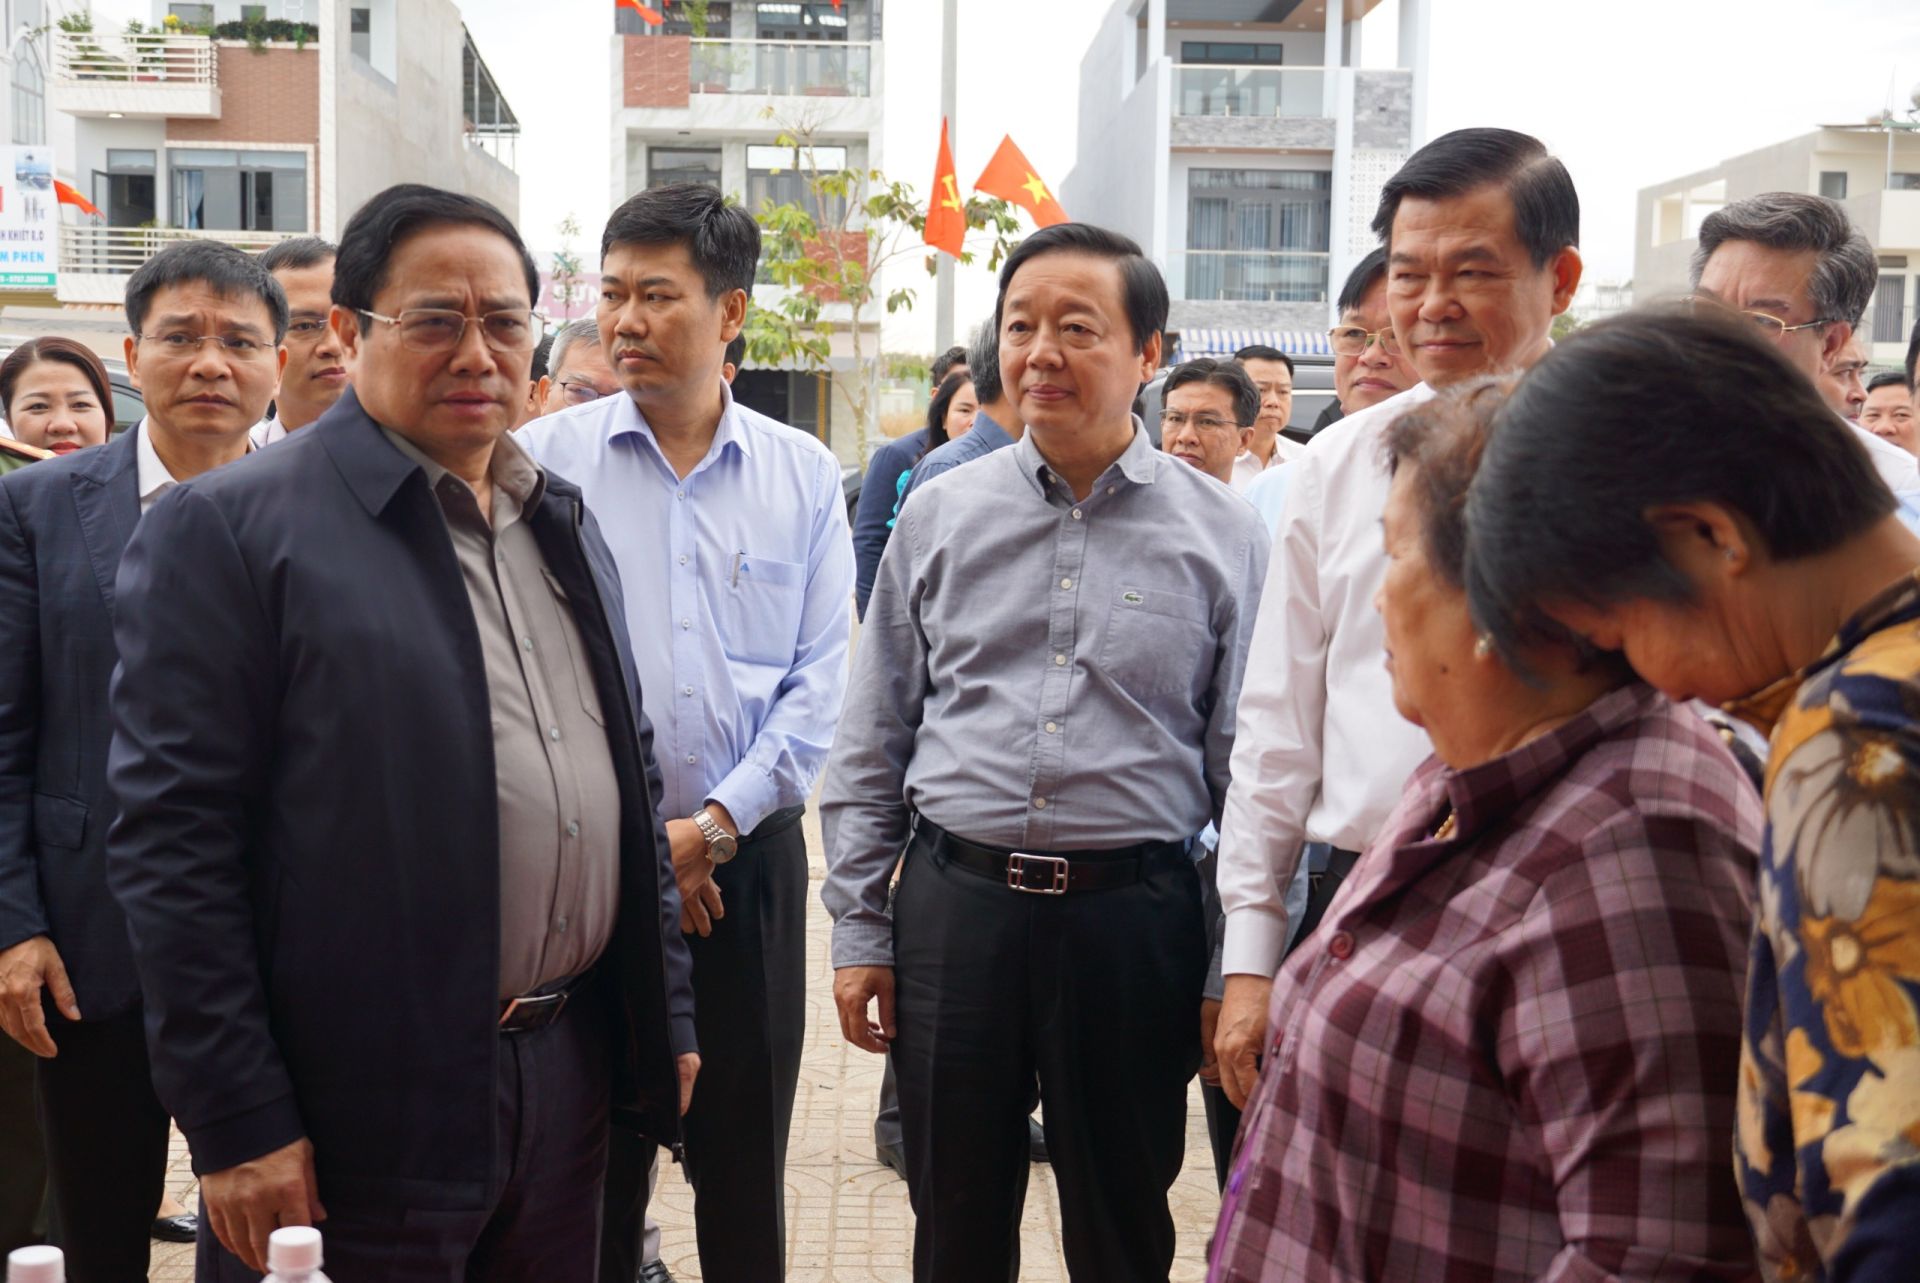 Thủ tướng cùng với Phó Thủ tướng đến chúc Tết người dân khu TĐC Lộc An - Bình Sơn (H.Long Thành).